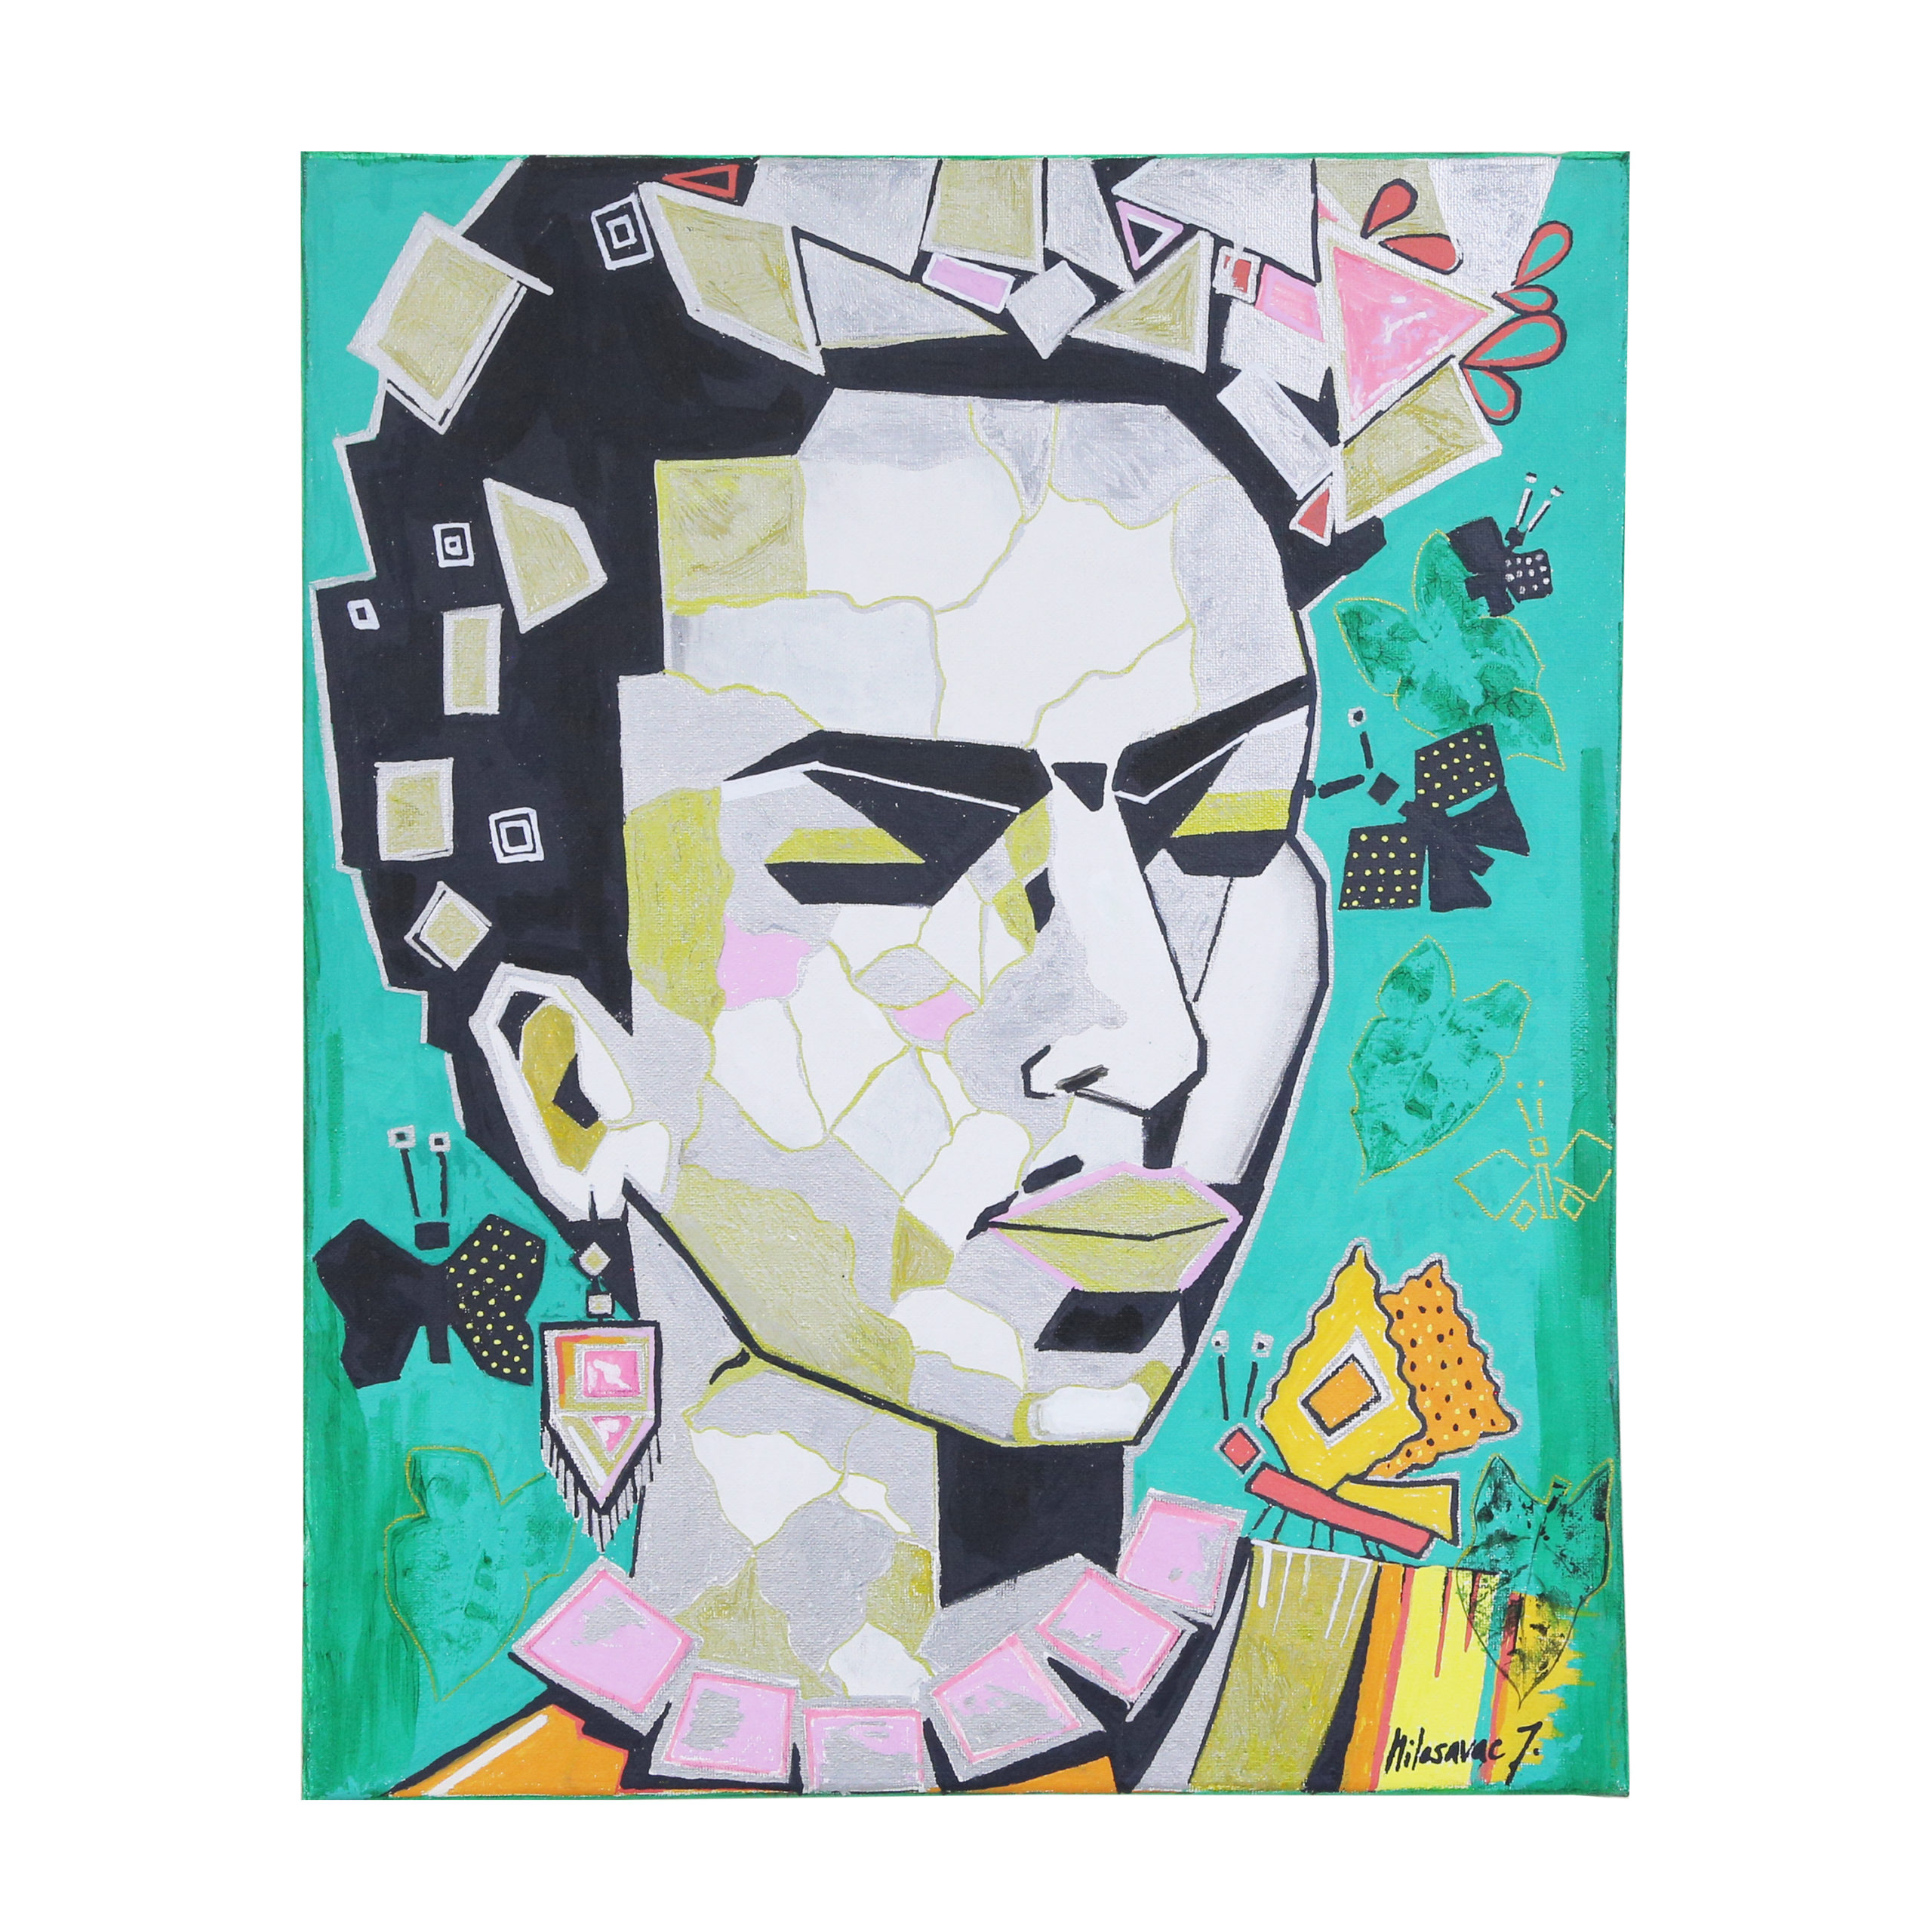 Kunstwerk von Milosavac: "Fridah Kahlo" - 40cm breit - 50cm hoch